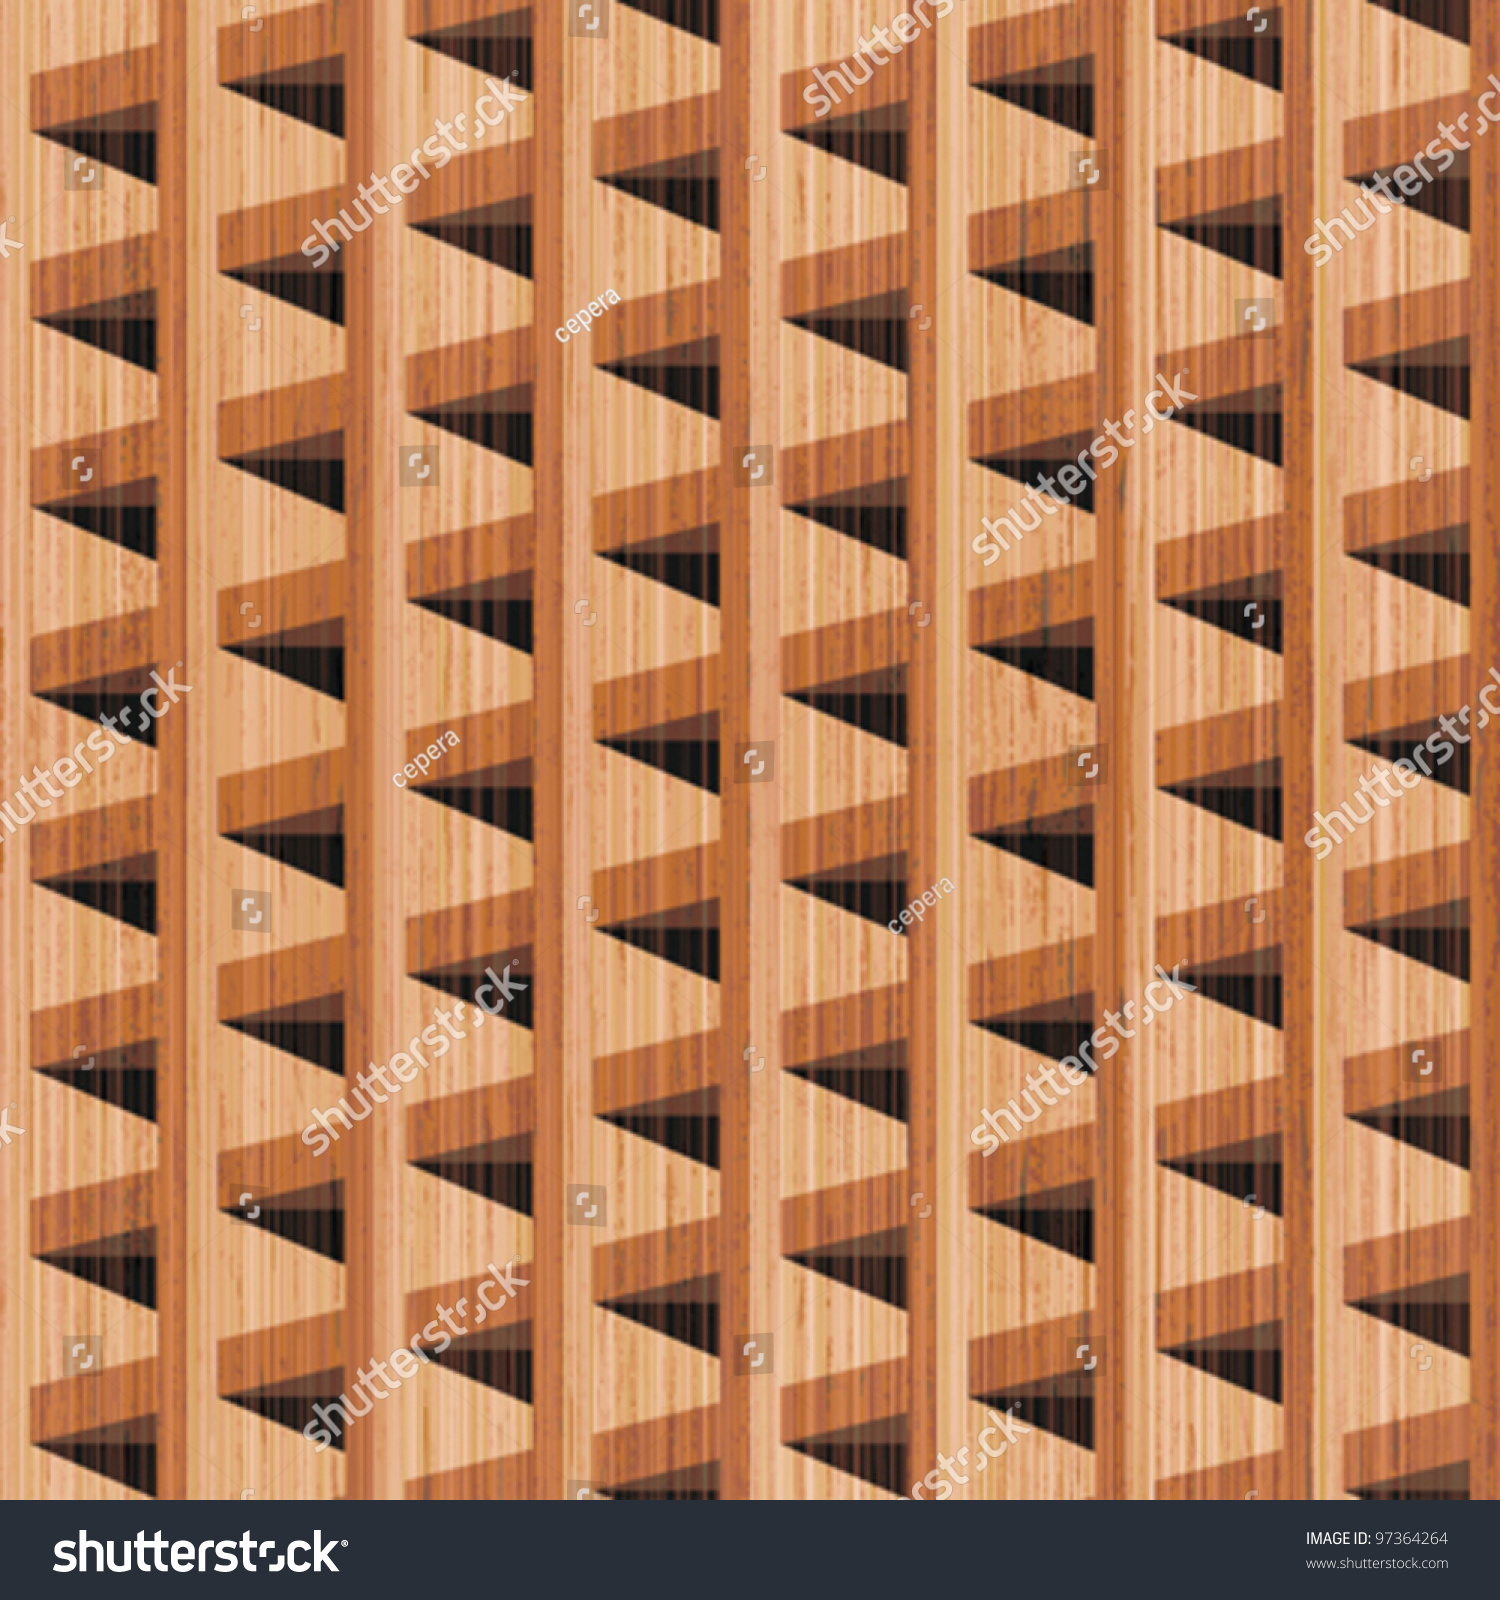 Wood pattern b&w photo